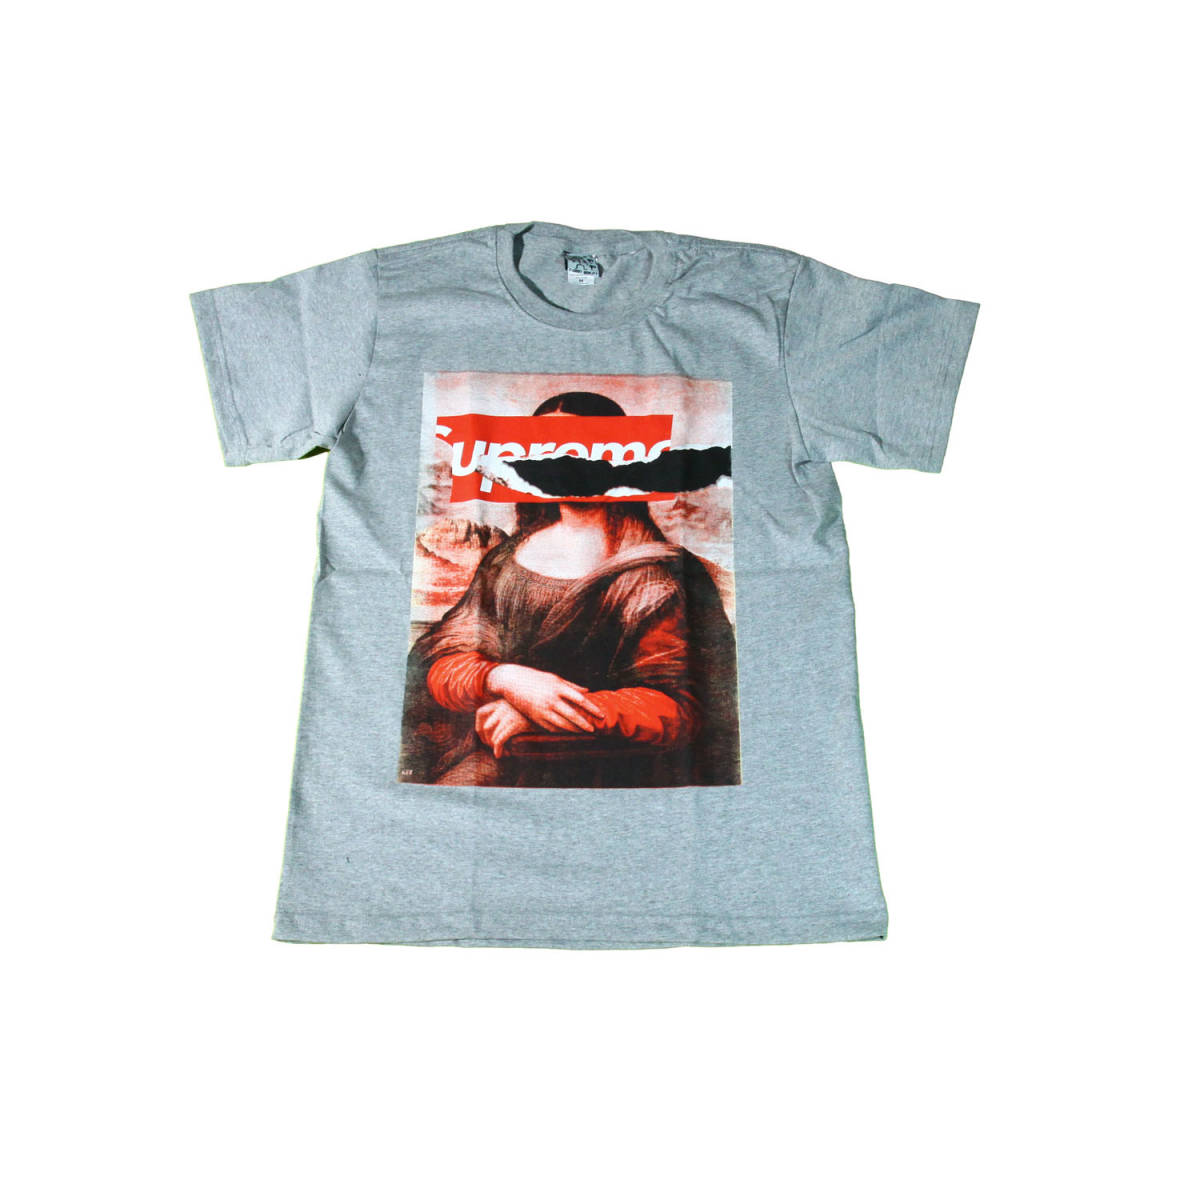 मोना लिसा पेंटिंग जोक पैरोडी ग्रे स्टाइलिश आर्ट अमेरिकन डिज़ाइन टी-शर्ट मजेदार टी-शर्ट पुरुषों की टी-शर्ट छोटी आस्तीन ★N89L, एम आकार, गोलाकार गर्दन, एक उदाहरण, चरित्र